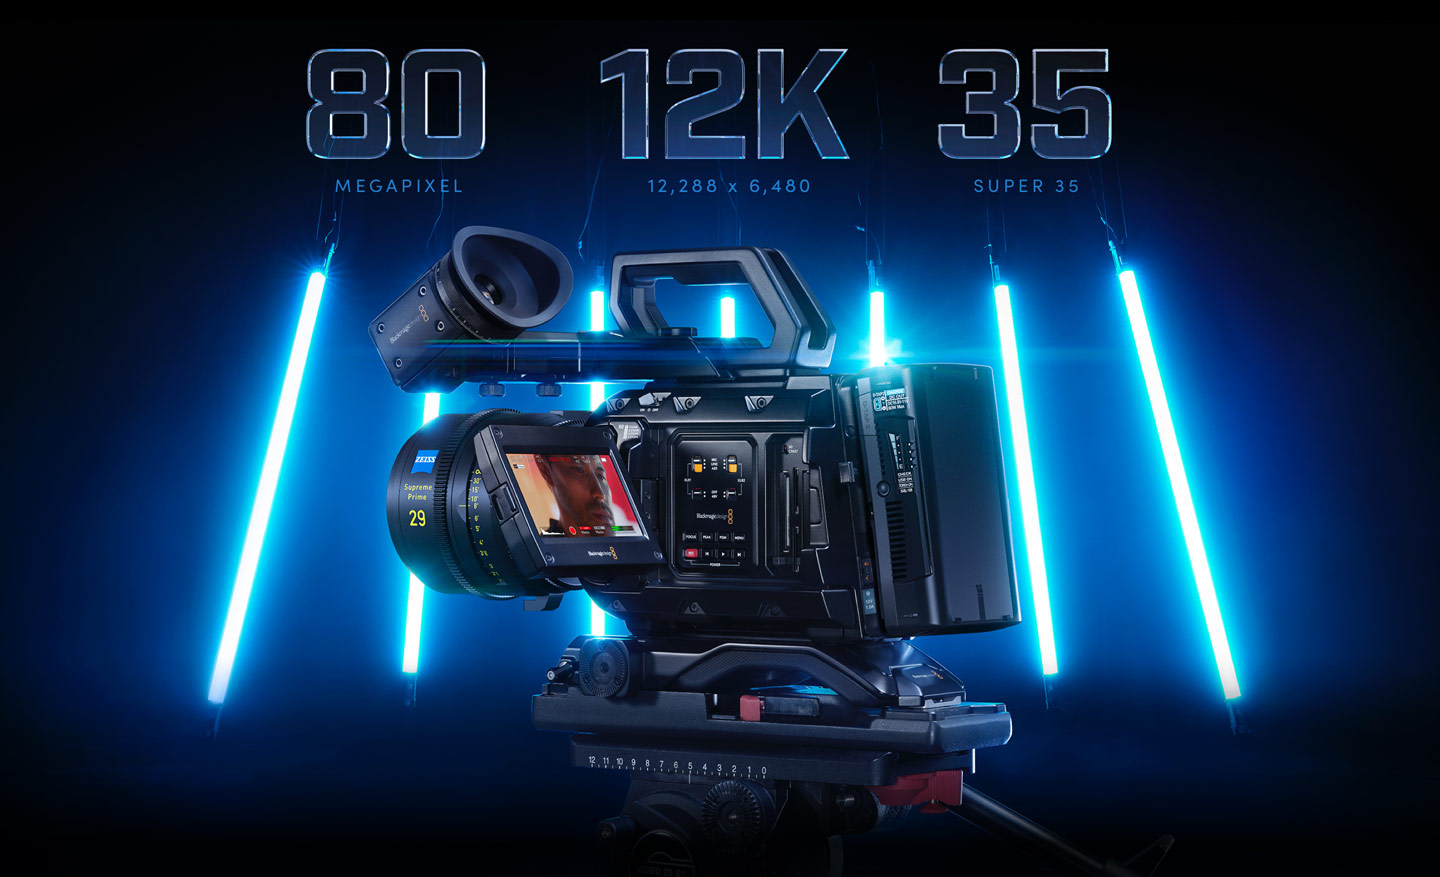 Kamera Blackmagic Ursa Mini Pro 12K